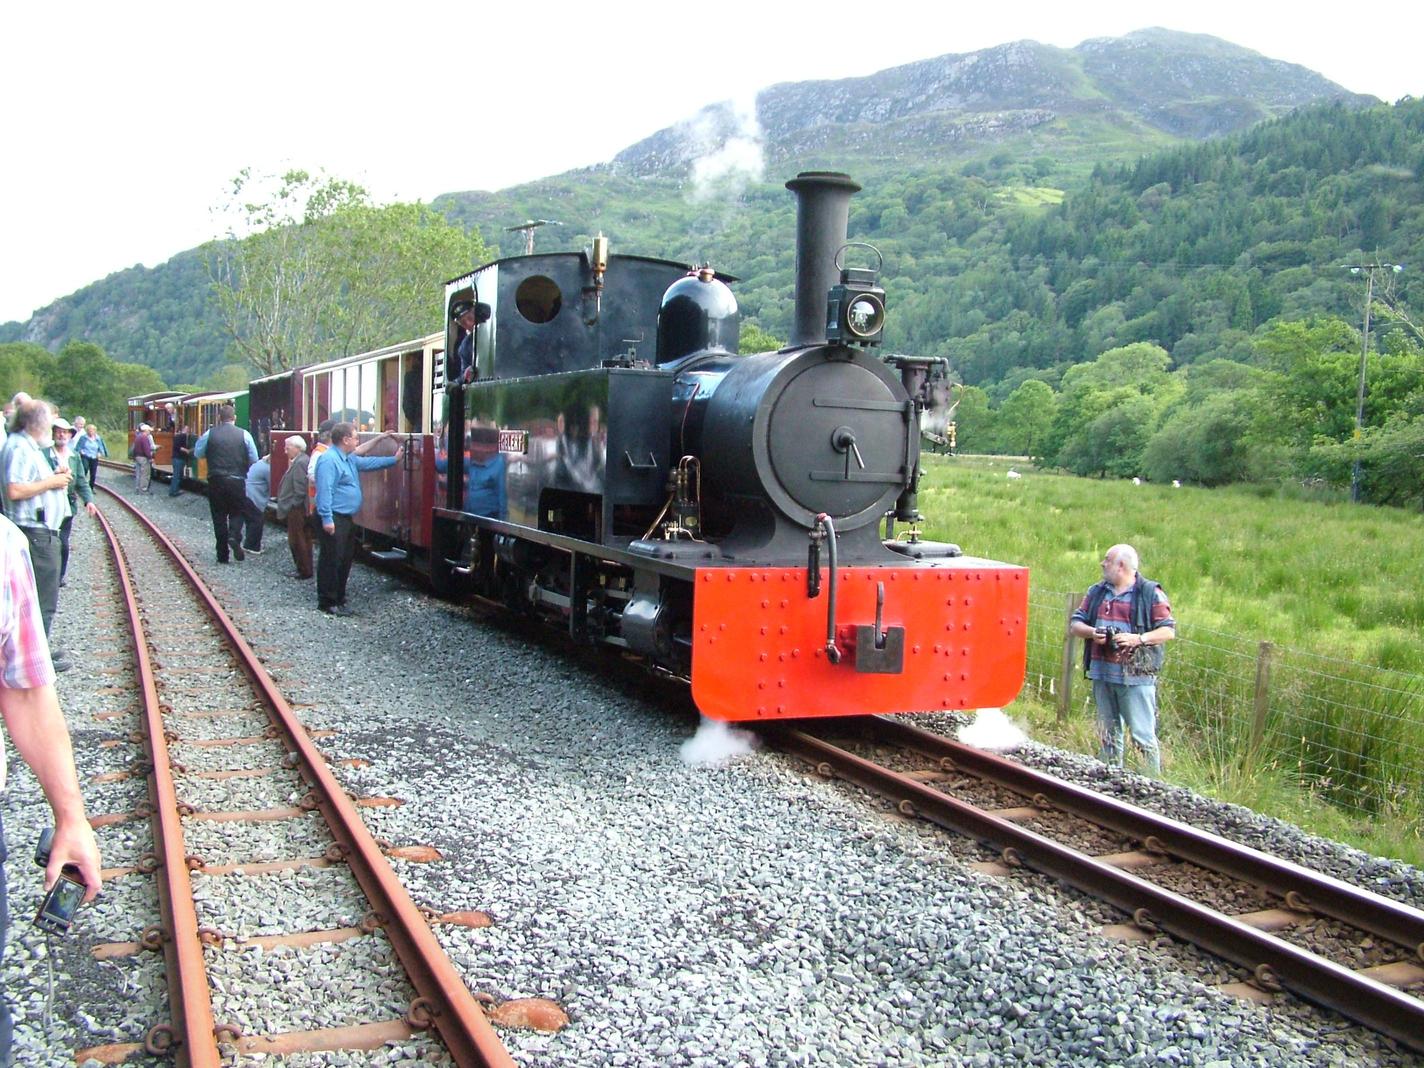 Gelert & train at Hafod y Llyn